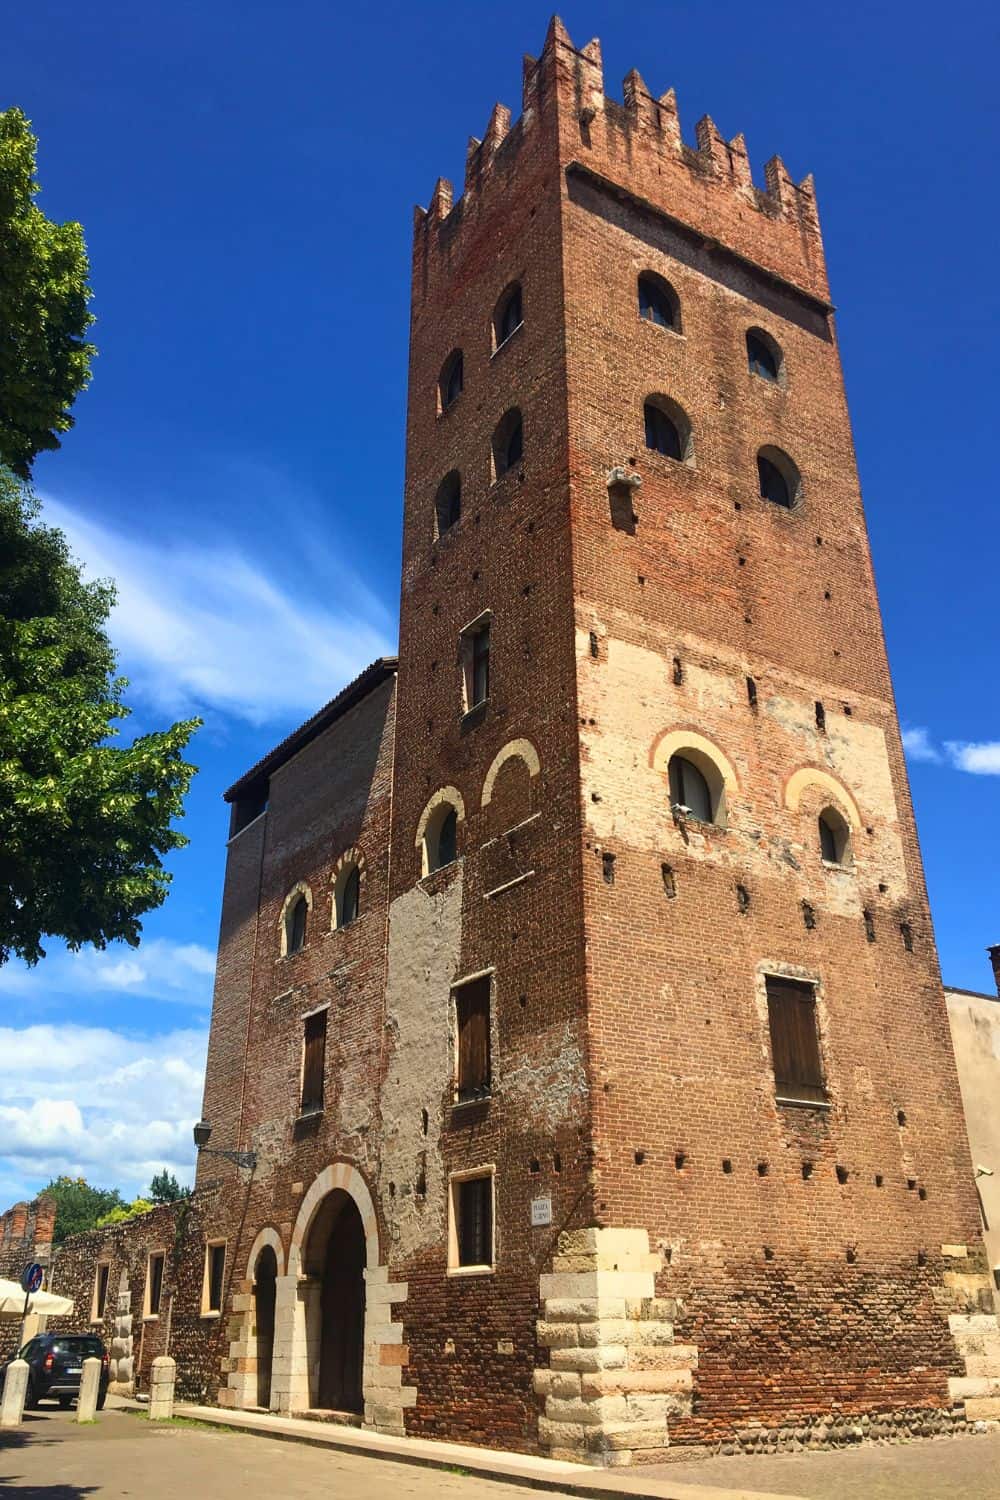 A large brick building that is part of the Basilica di San Zeno Maggiore